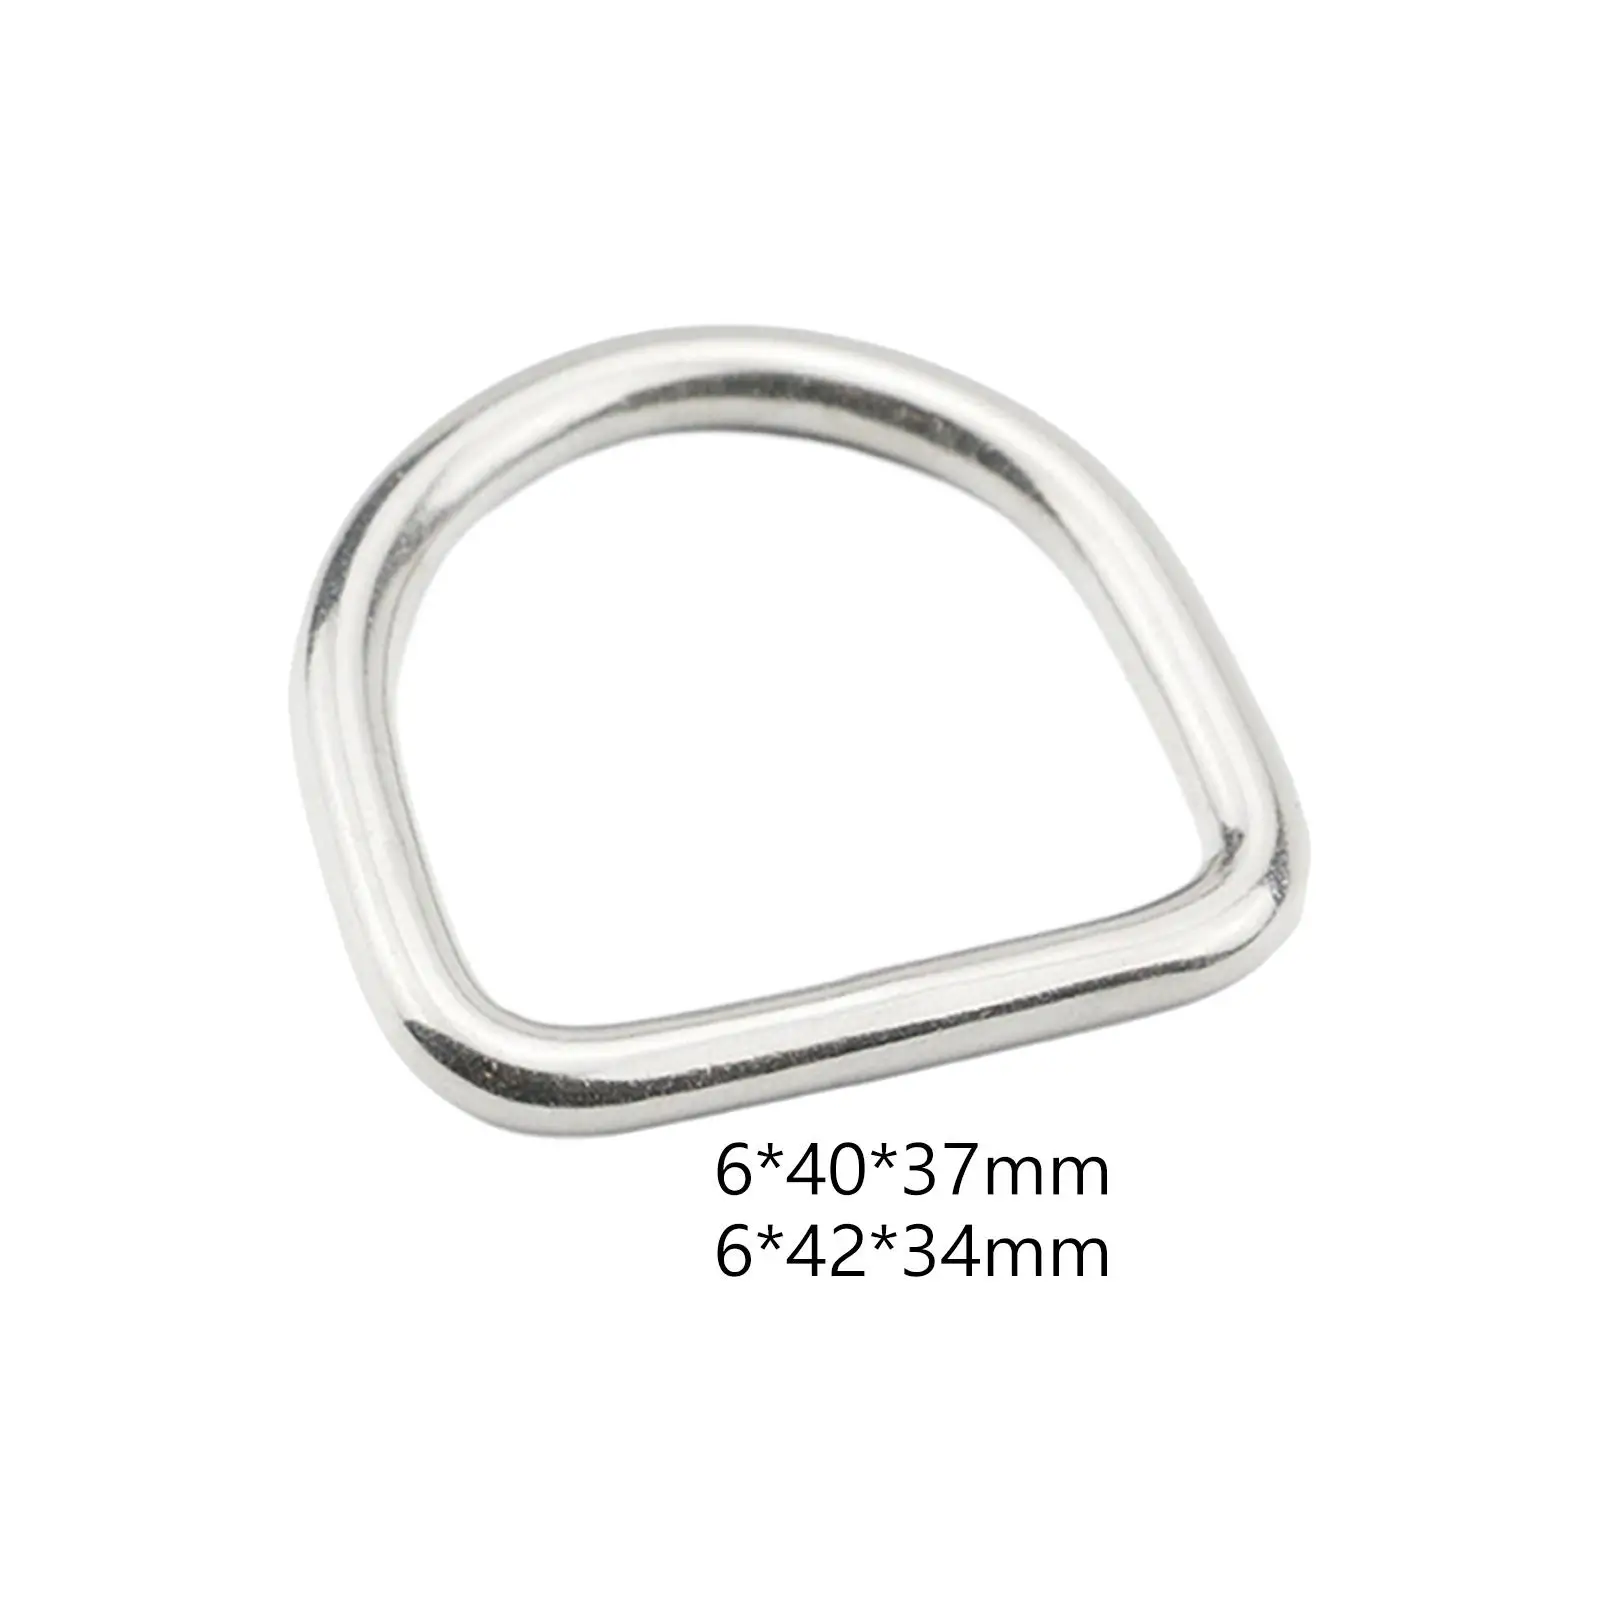 

Металлическое D-образное кольцо 3x металлическое, прочное D-образное кольцо из нержавеющей стали, соединитель для одежды, ремня, кошелька, сумки, ремня, рюкзака, проект шитья